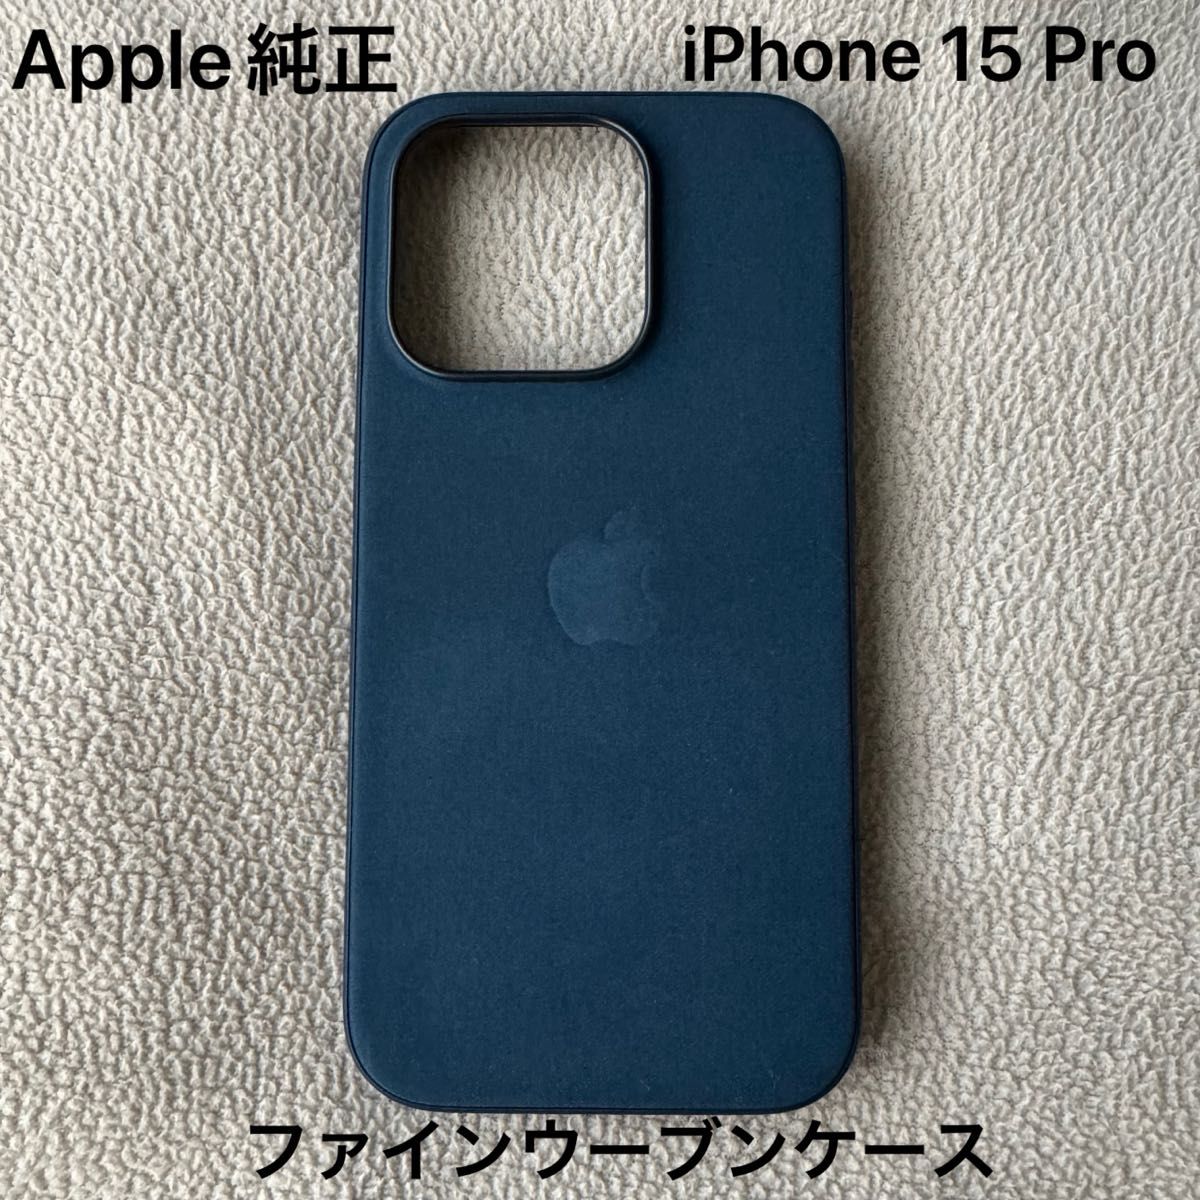 Apple iPhone 15 Proファインウーブンケース パシフィックブルー